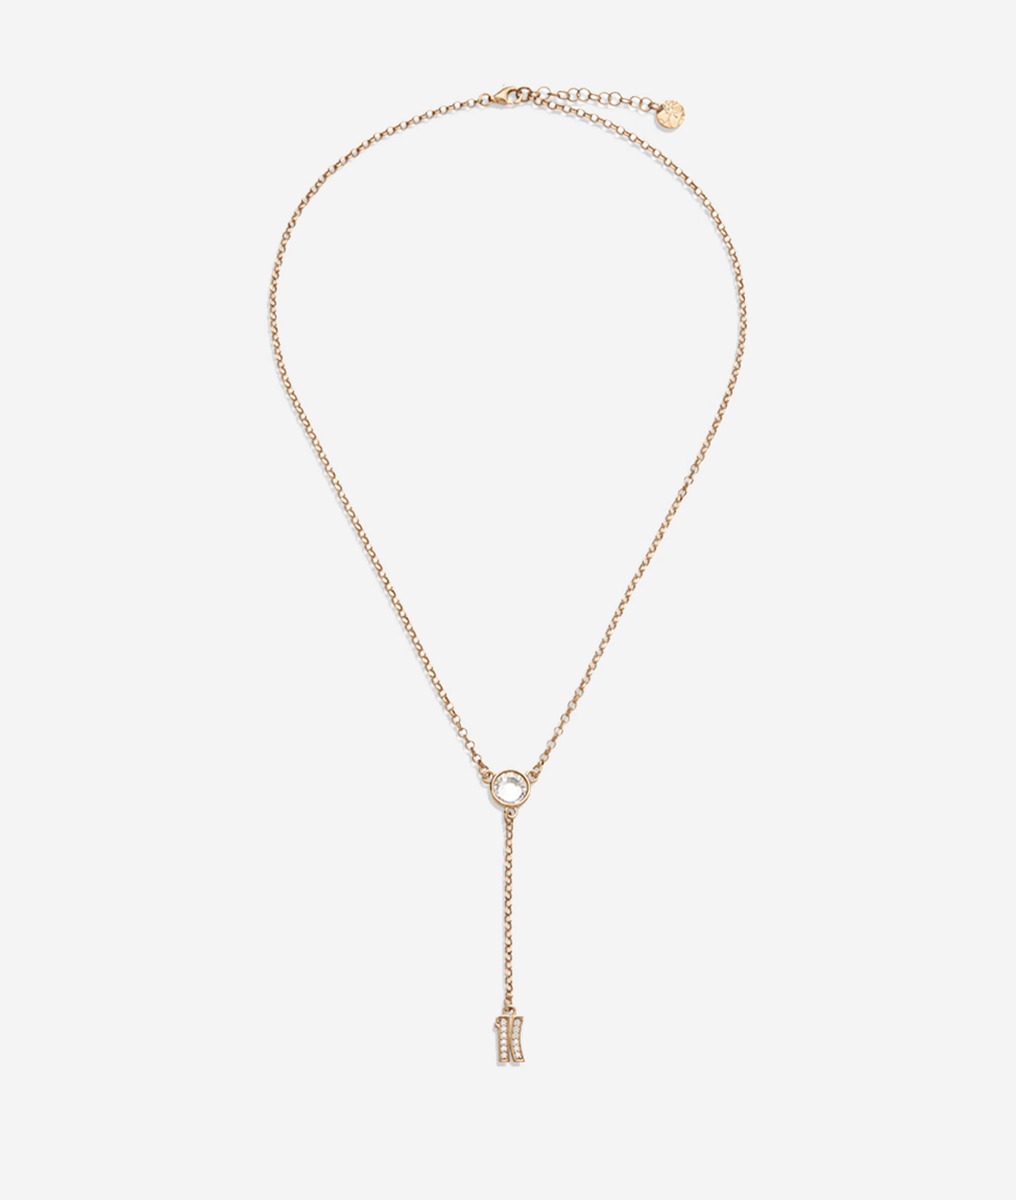 Fifth Avenue collana con pendente 1C in zirconi bianchi bagnata in Oro Giallo